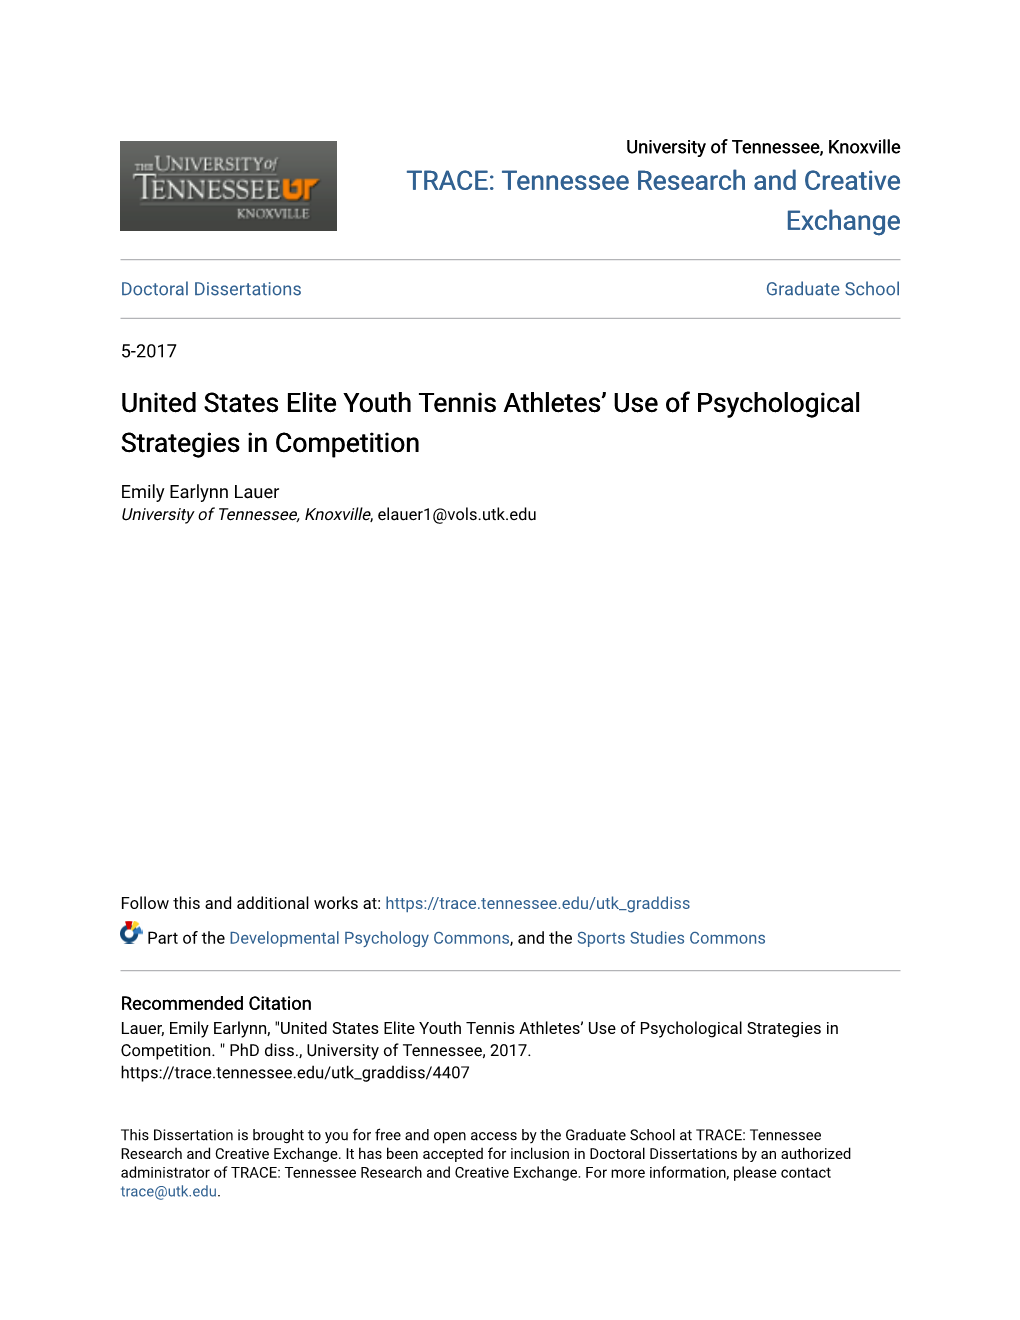 United States Elite Youth Tennis Athletes' Use of Psychological